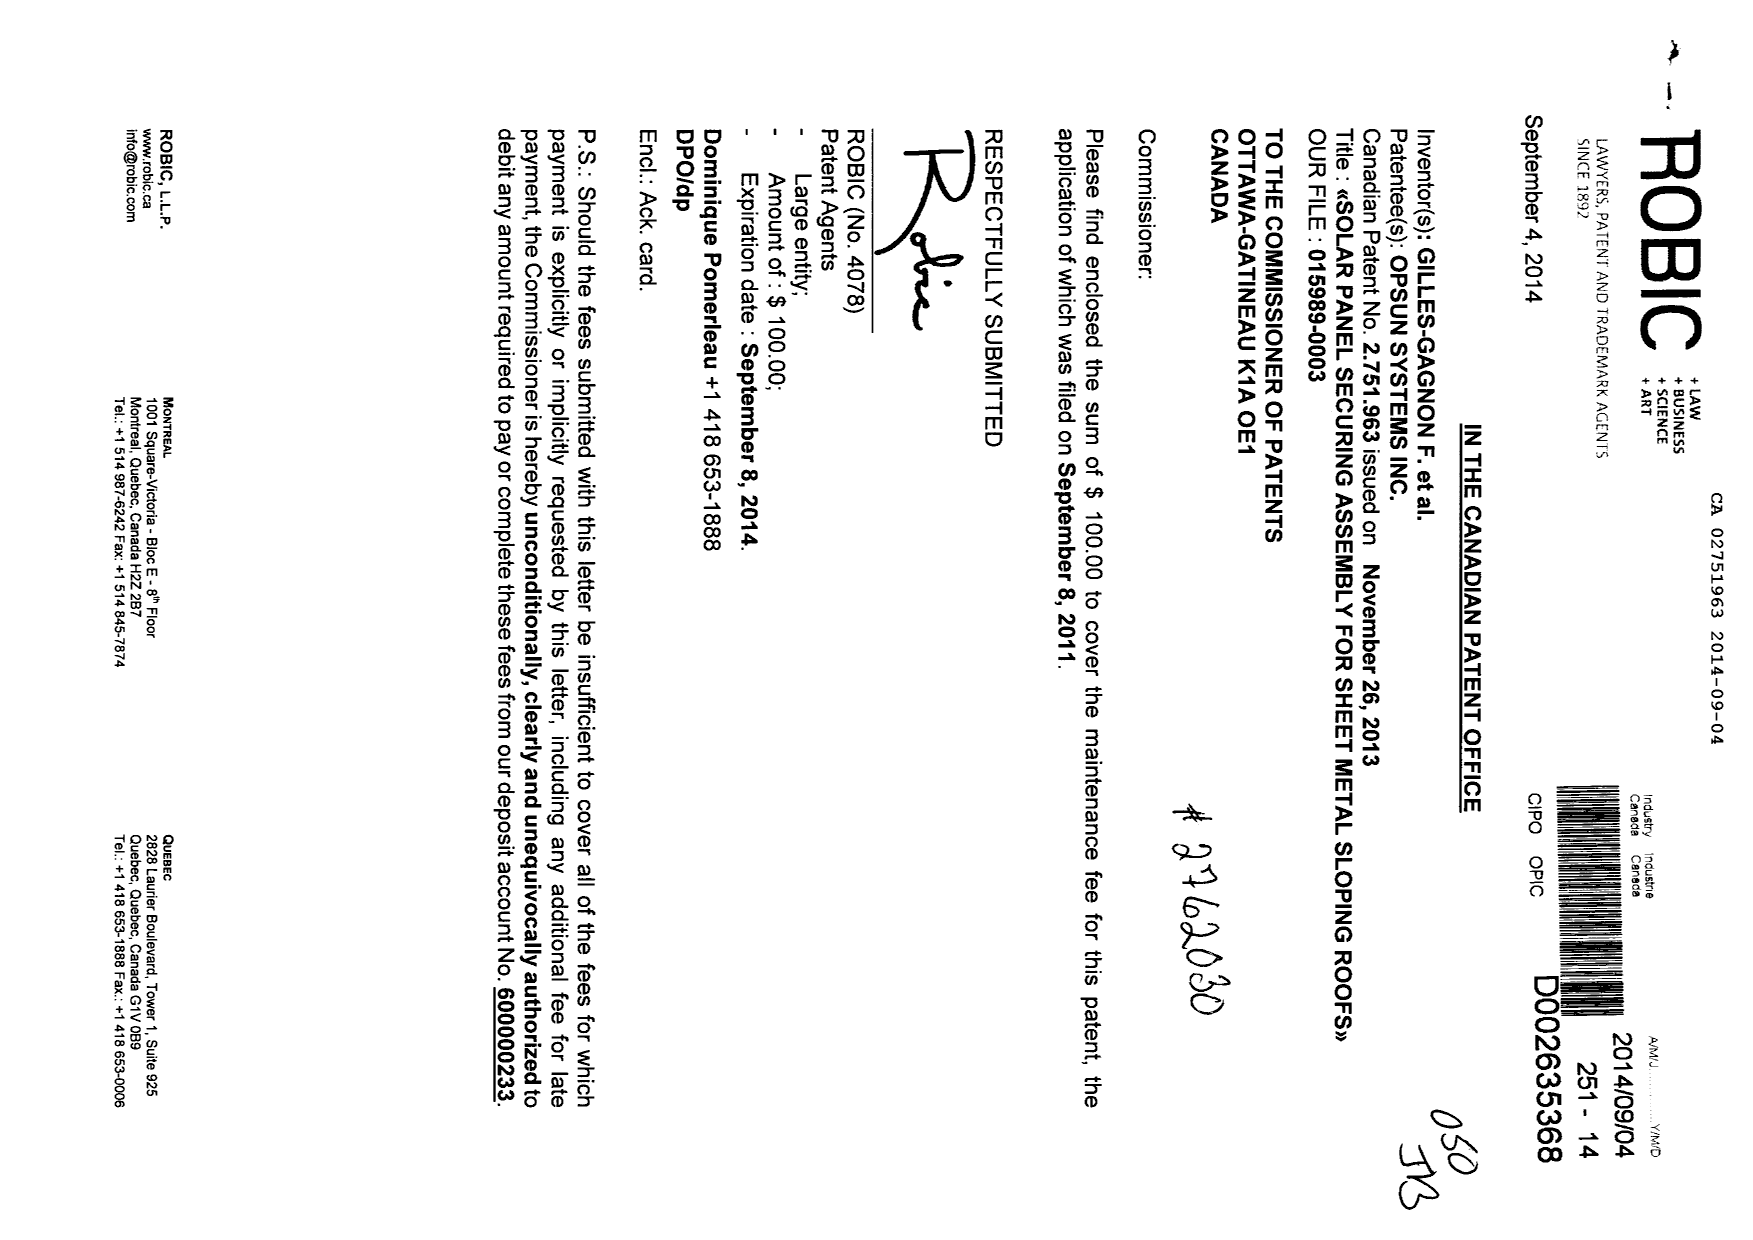 Document de brevet canadien 2751963. Taxes 20140904. Image 1 de 1